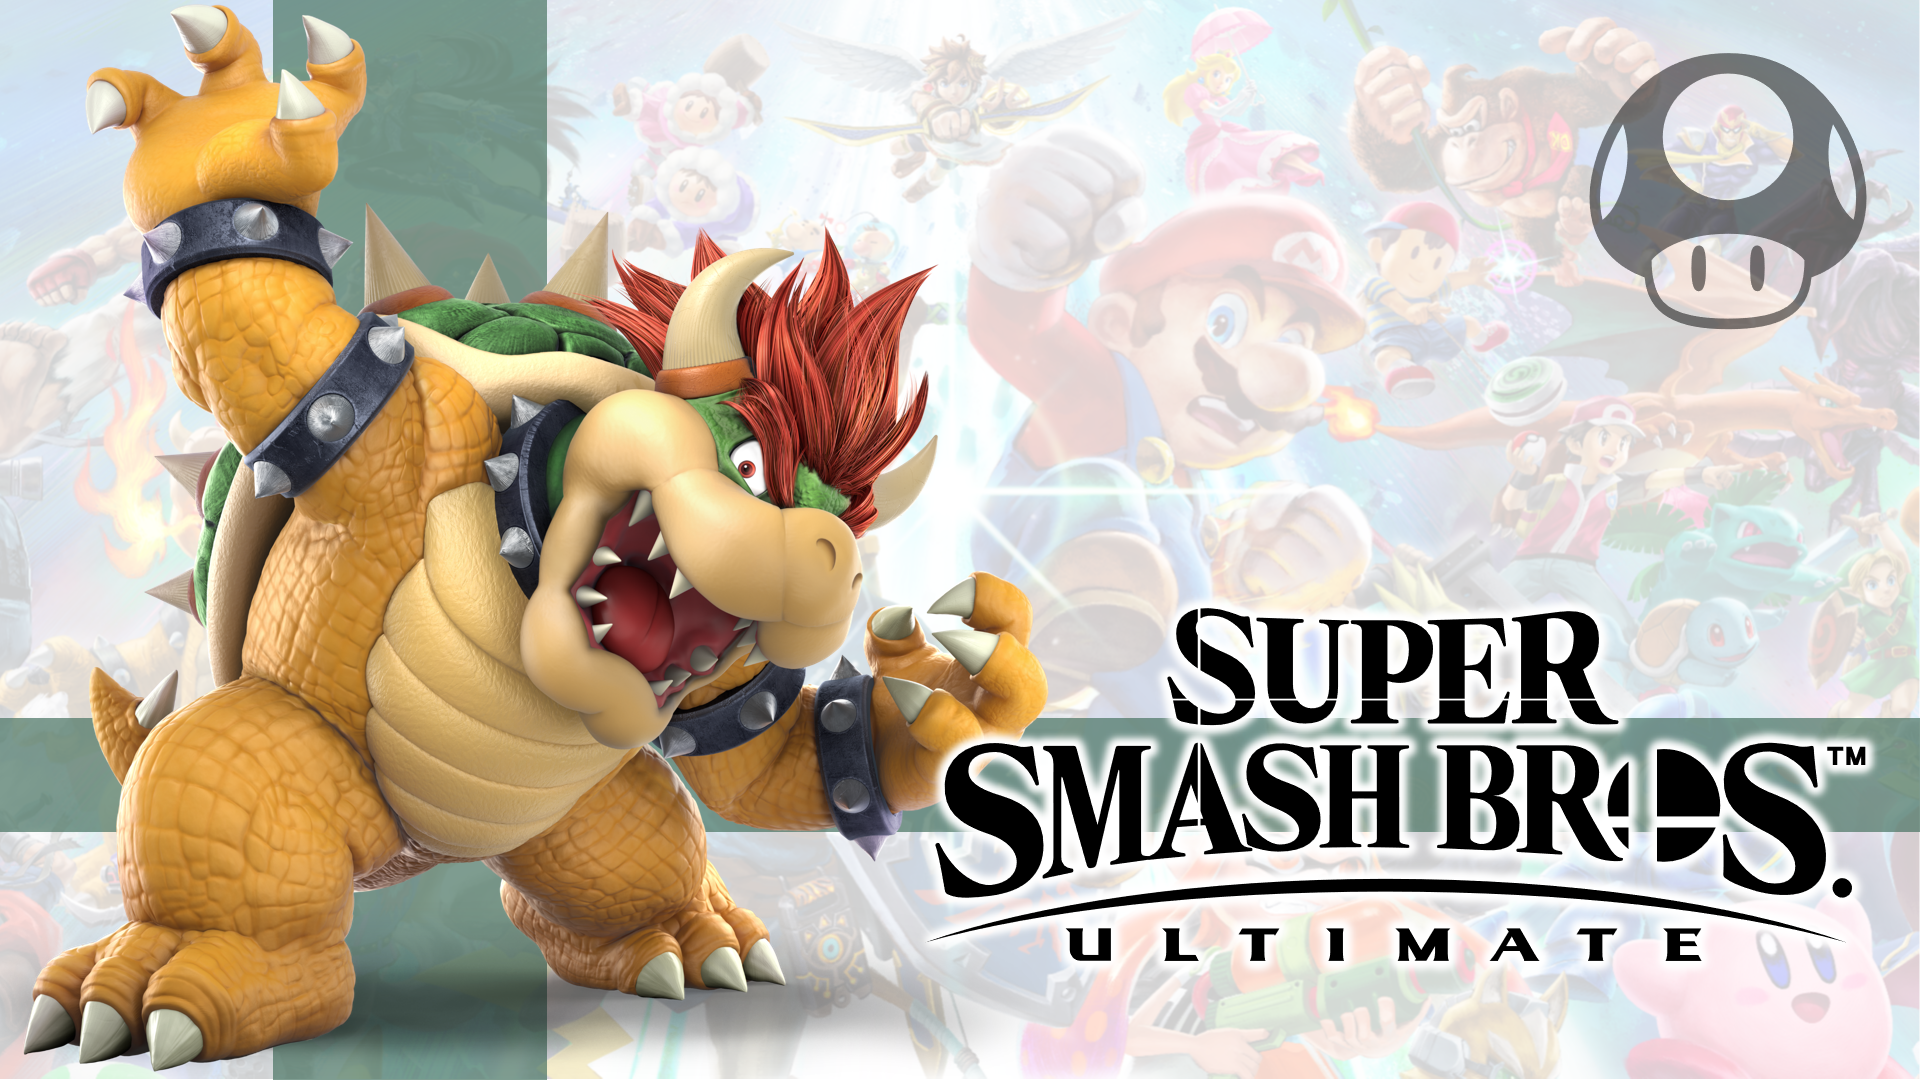 Super Smash Bros. Ultimate: 14. Bowser by Samcraft10 on DeviantArt